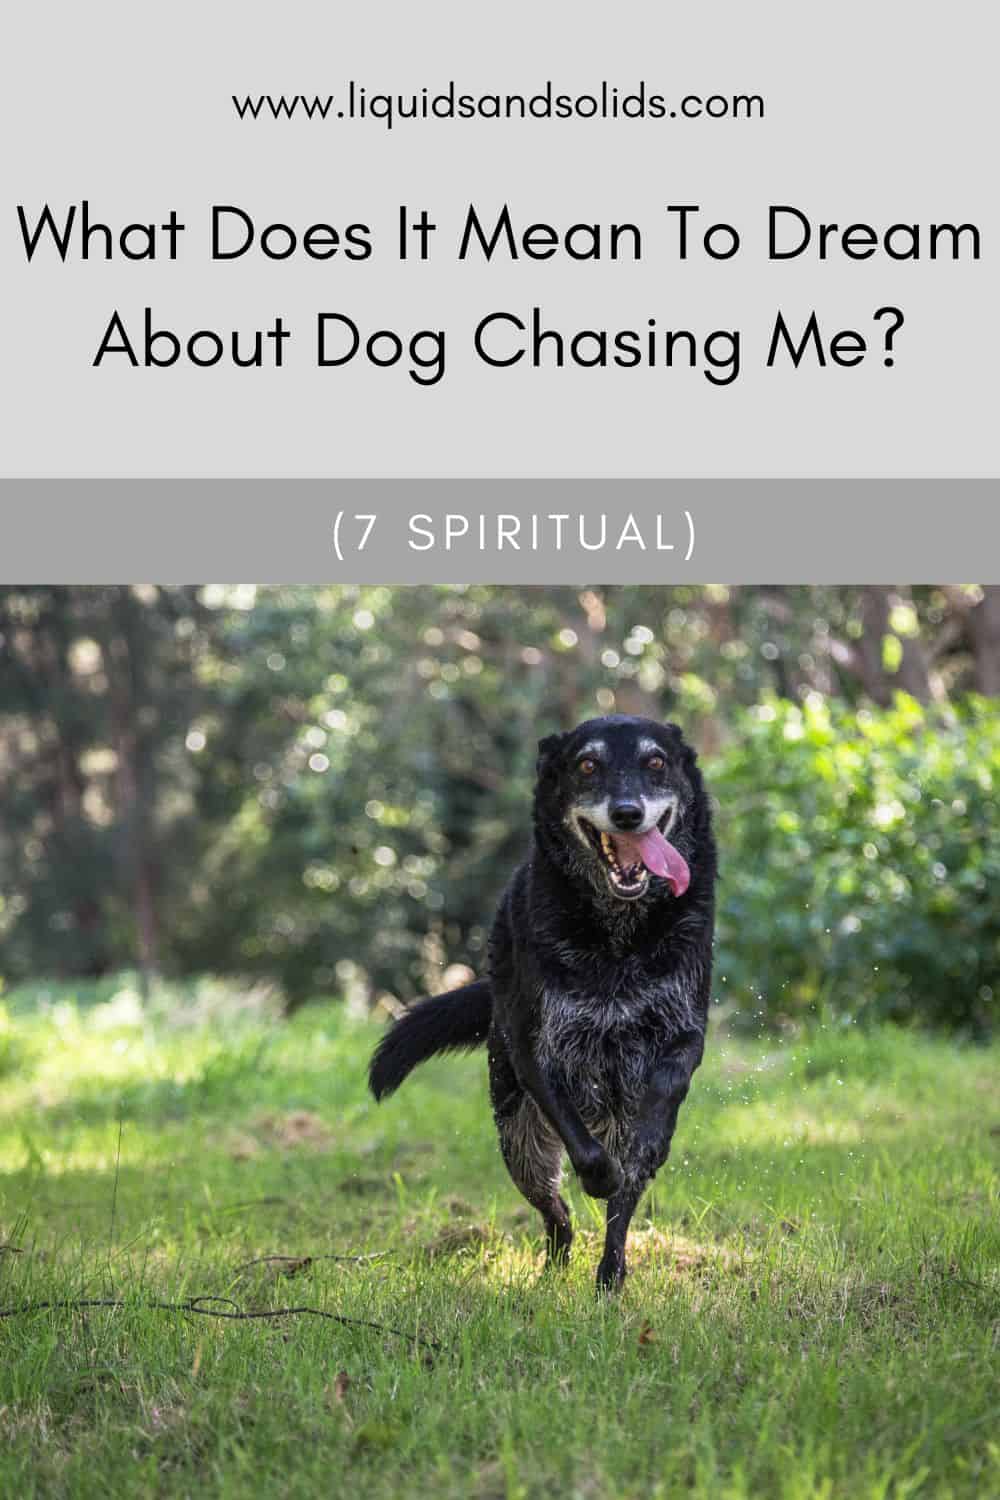  Rêve d'un chien qui me poursuit (7 significations spirituelles)